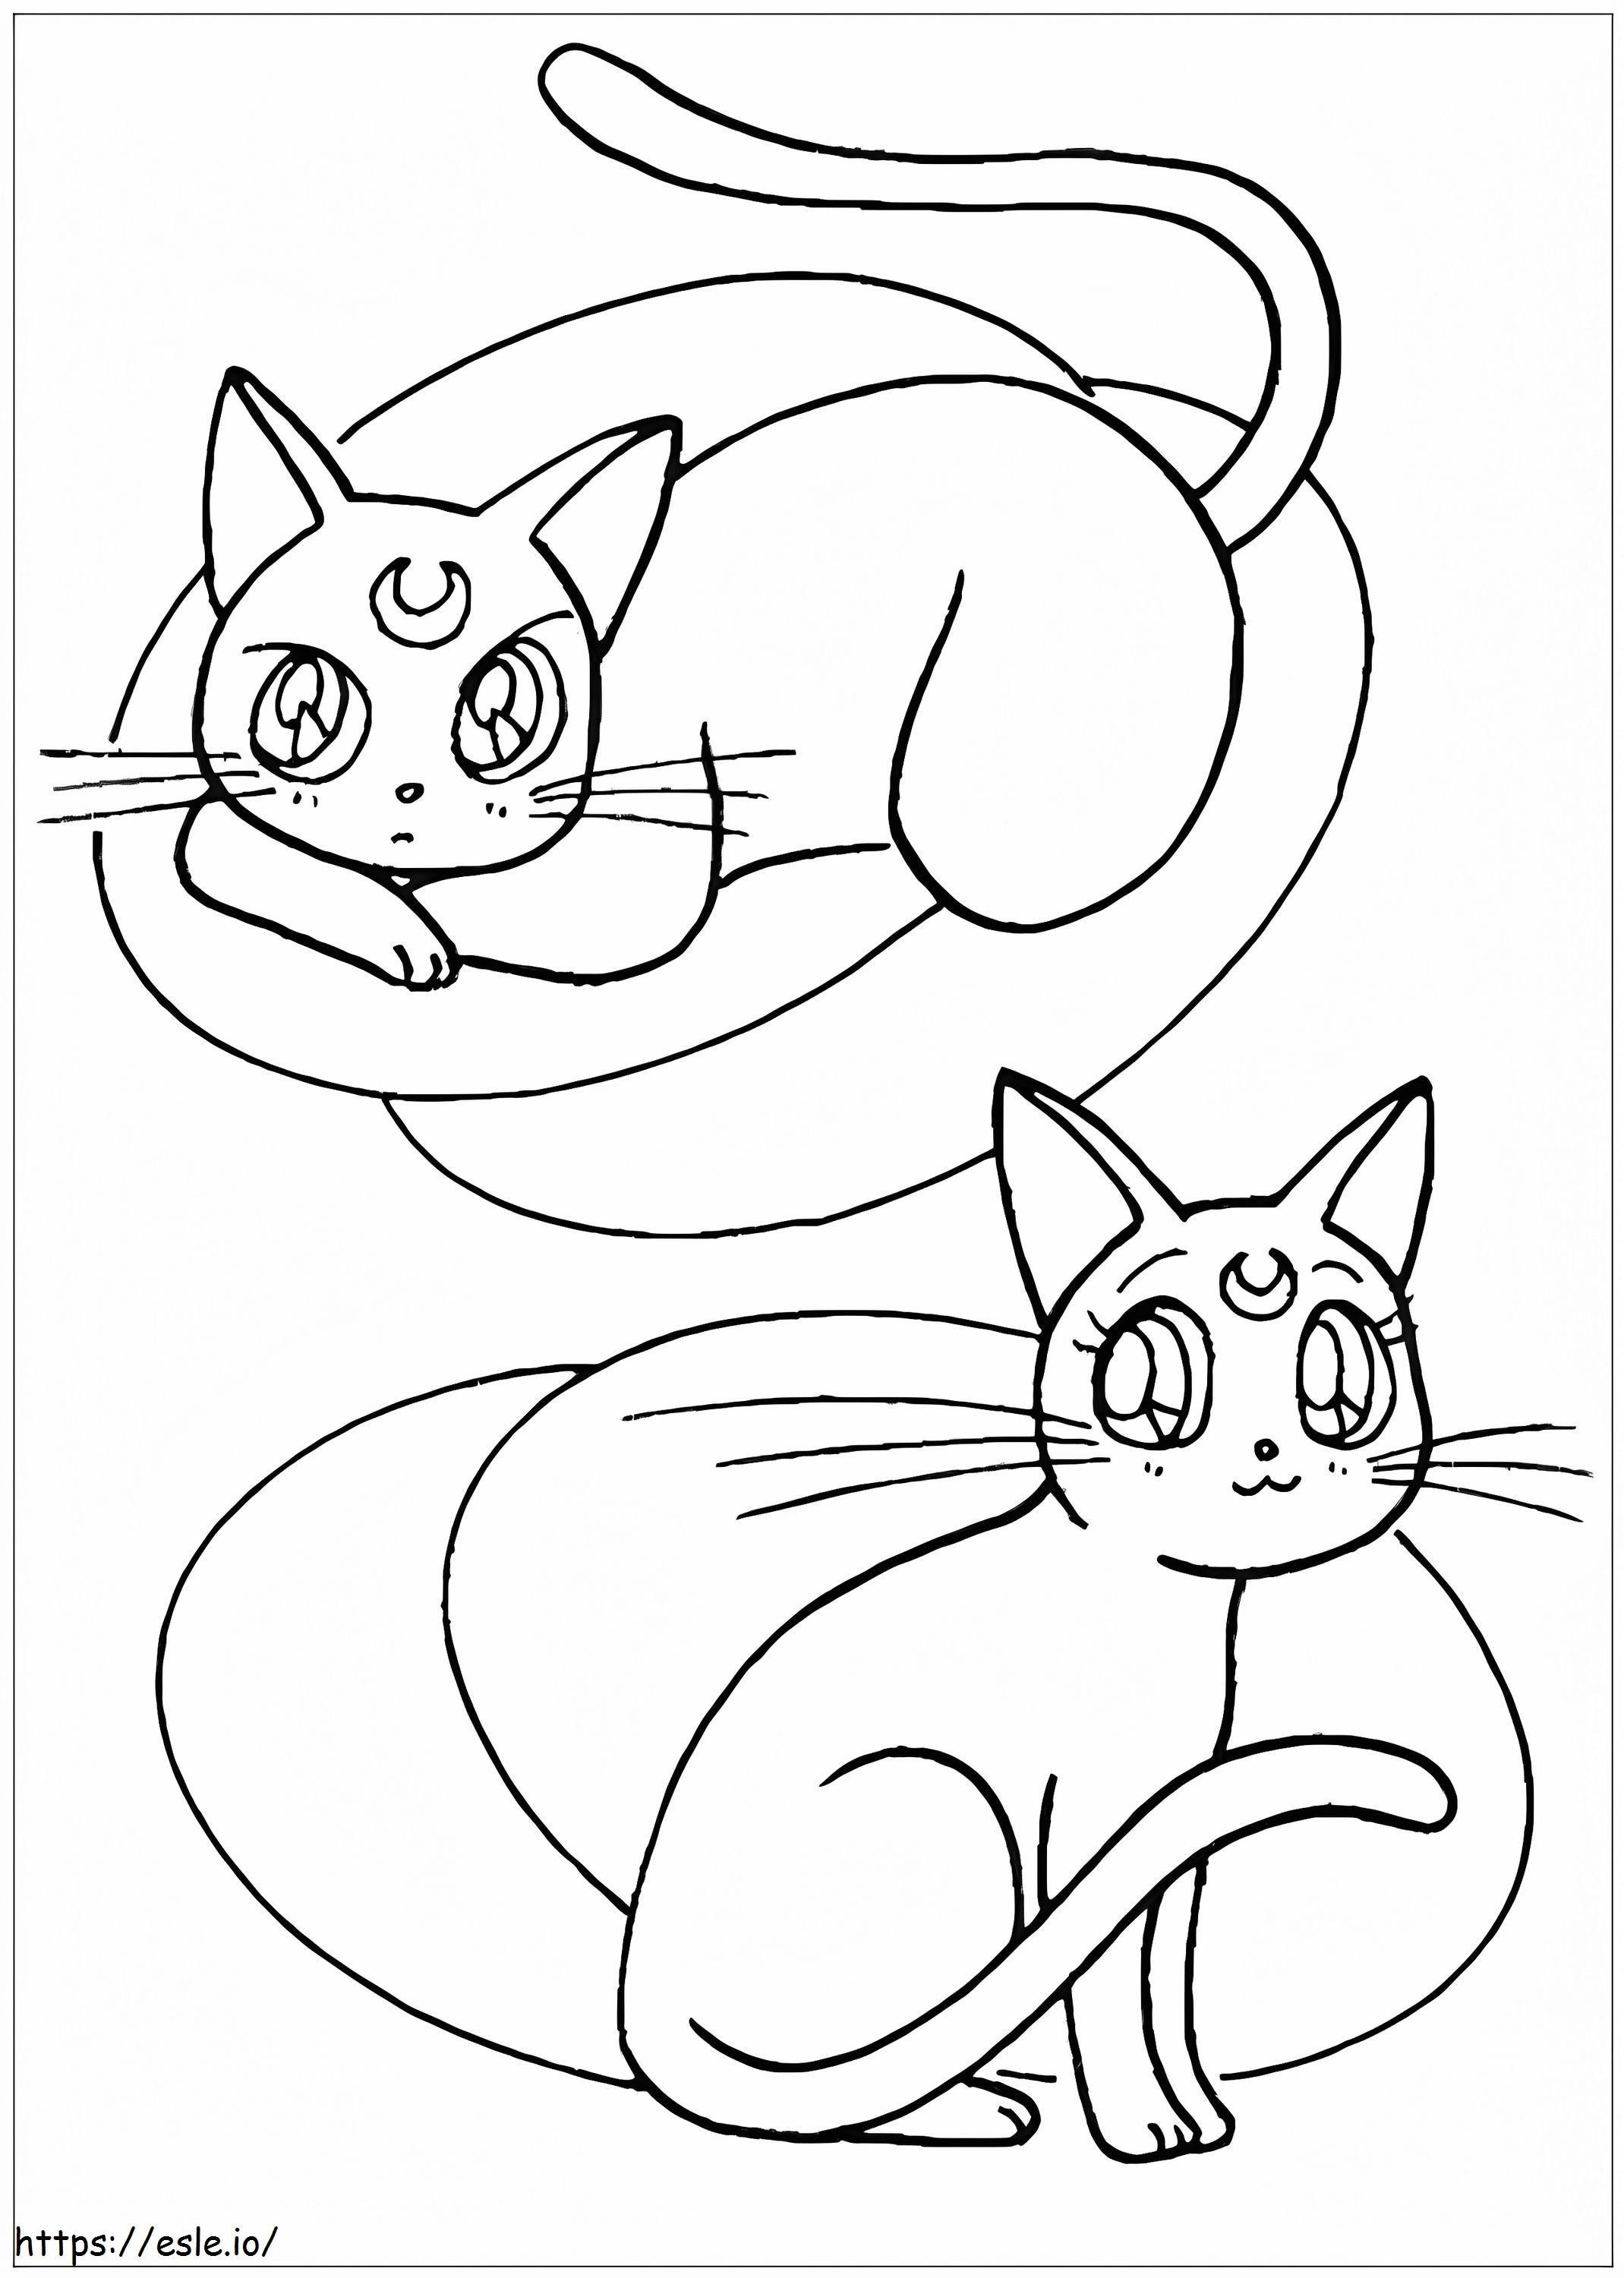 İki Sevimli Savaşçı Kedi boyama